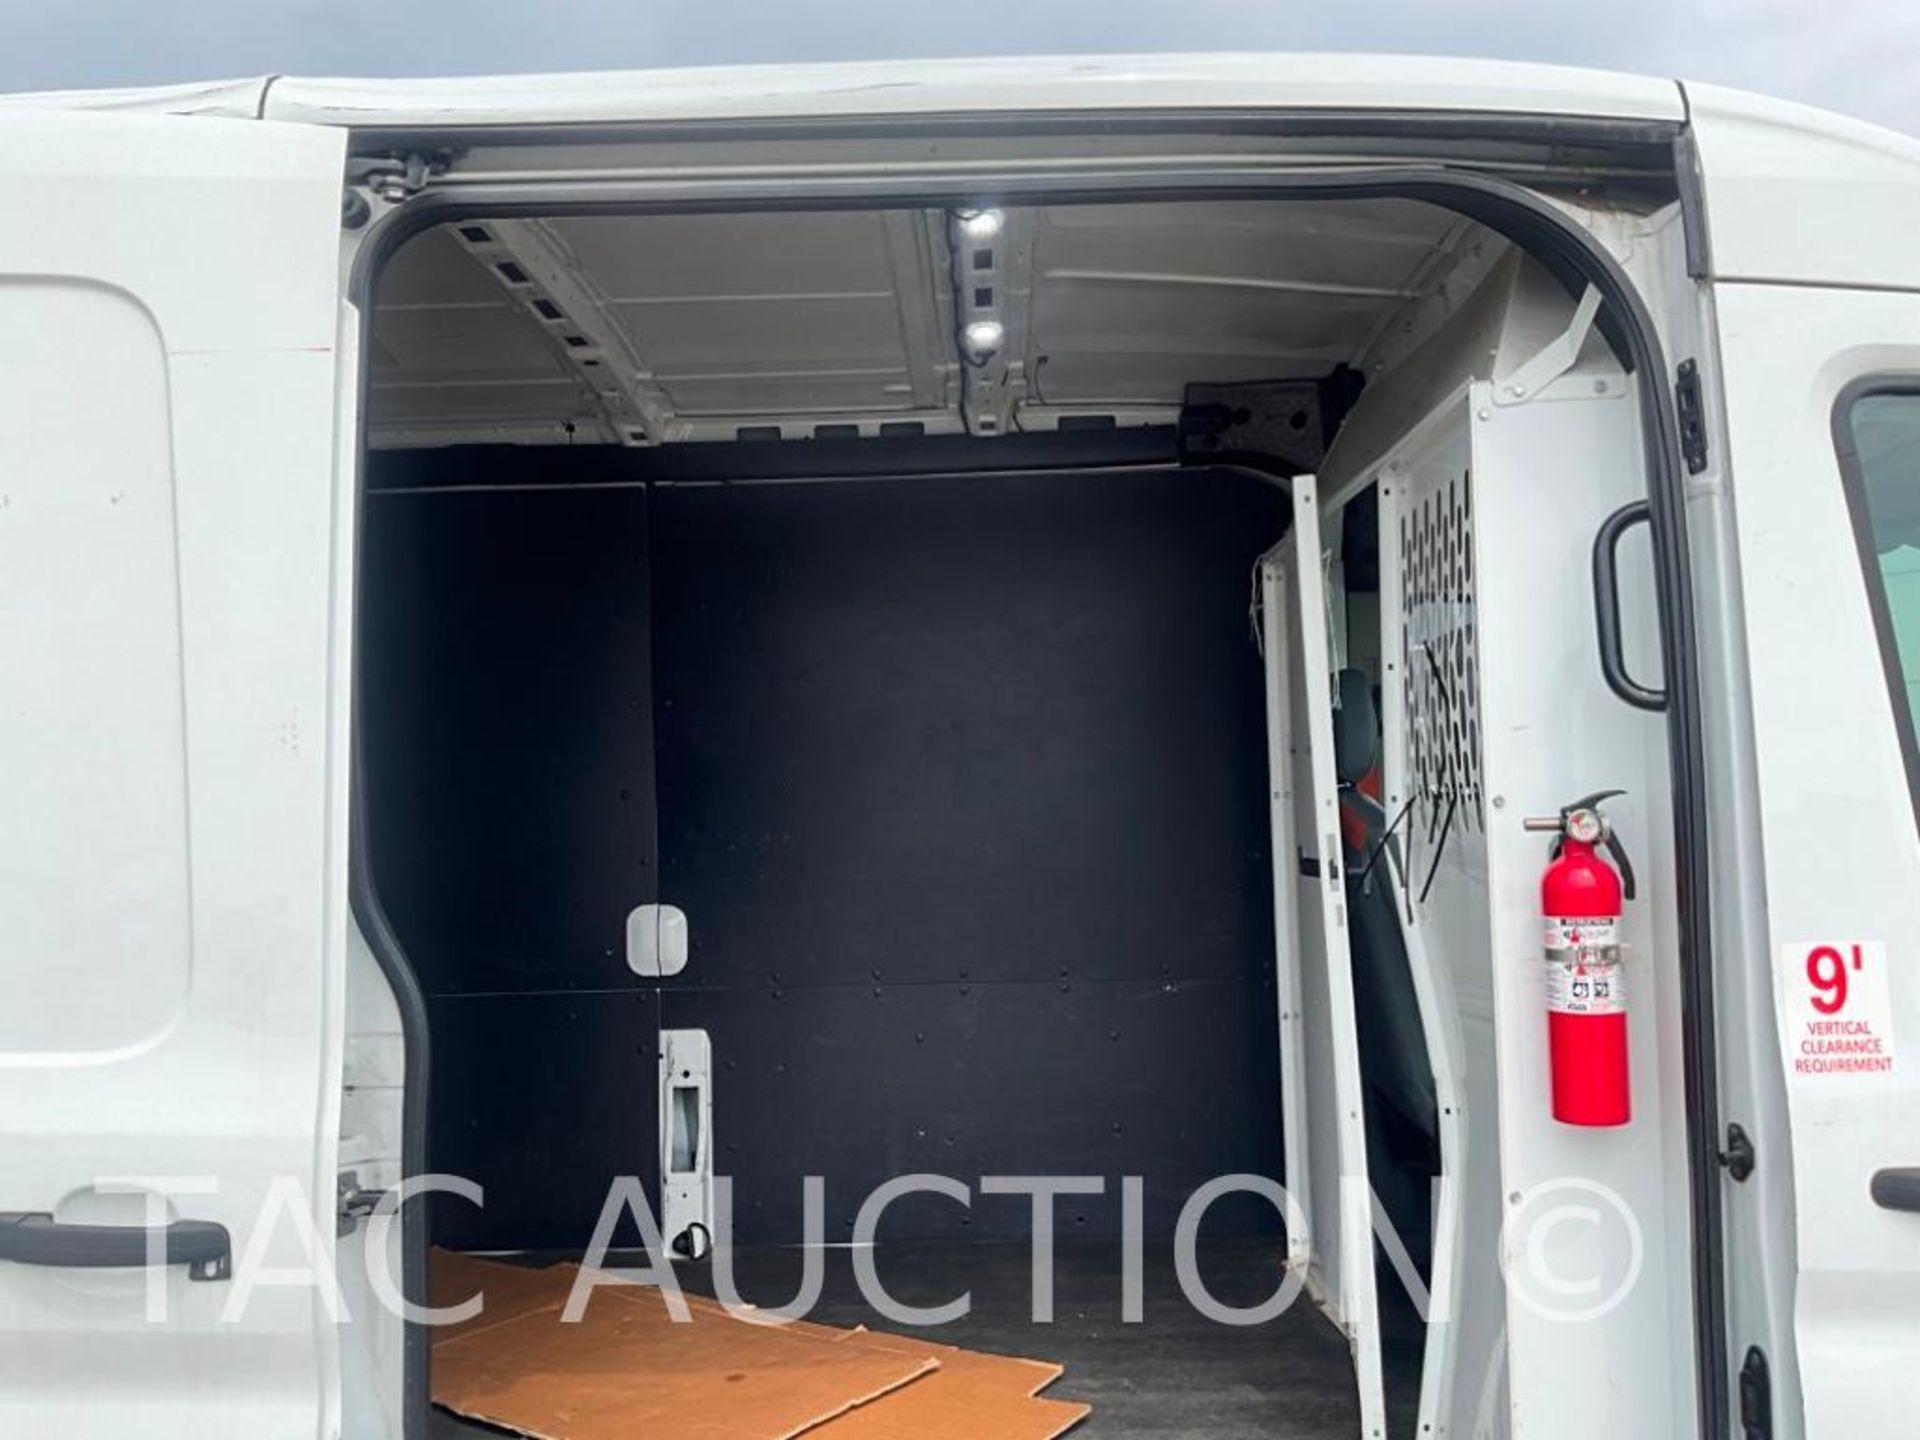 2019 Ford Transit 150 Cargo Van - Image 30 of 61